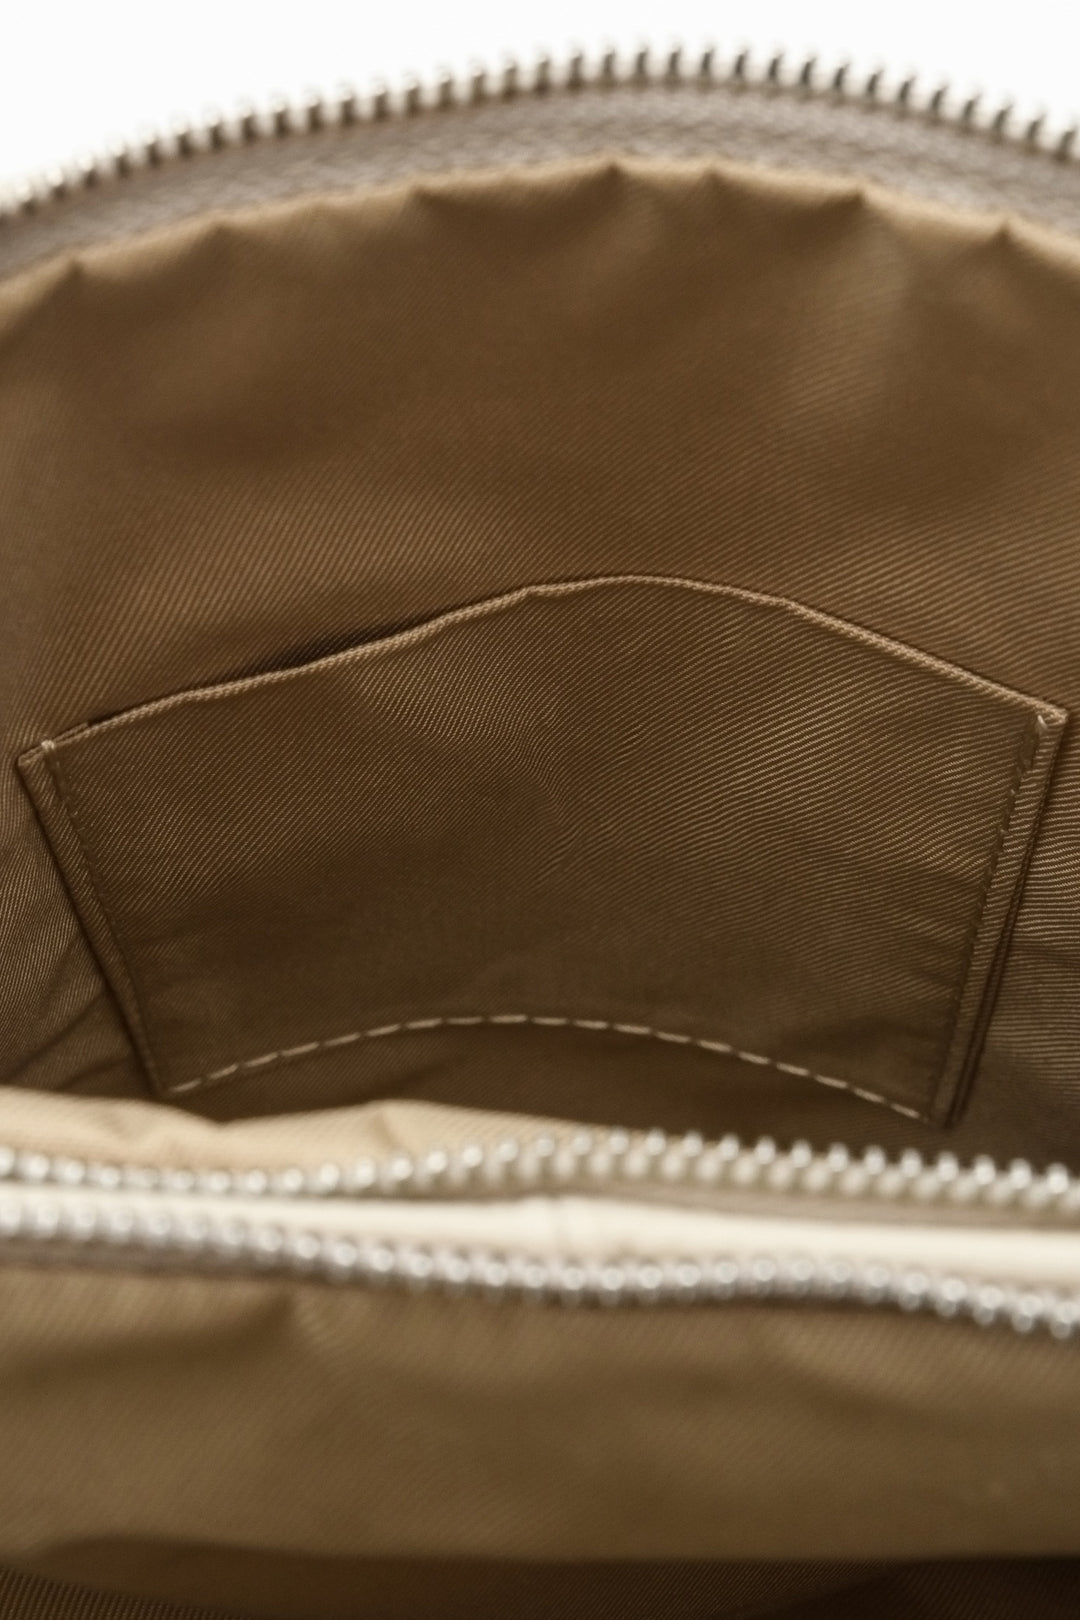 Damski, skórzany plecak Estro w kolorze jasnobeżowym - zbliżenie na kieszenie wewnętrzne.